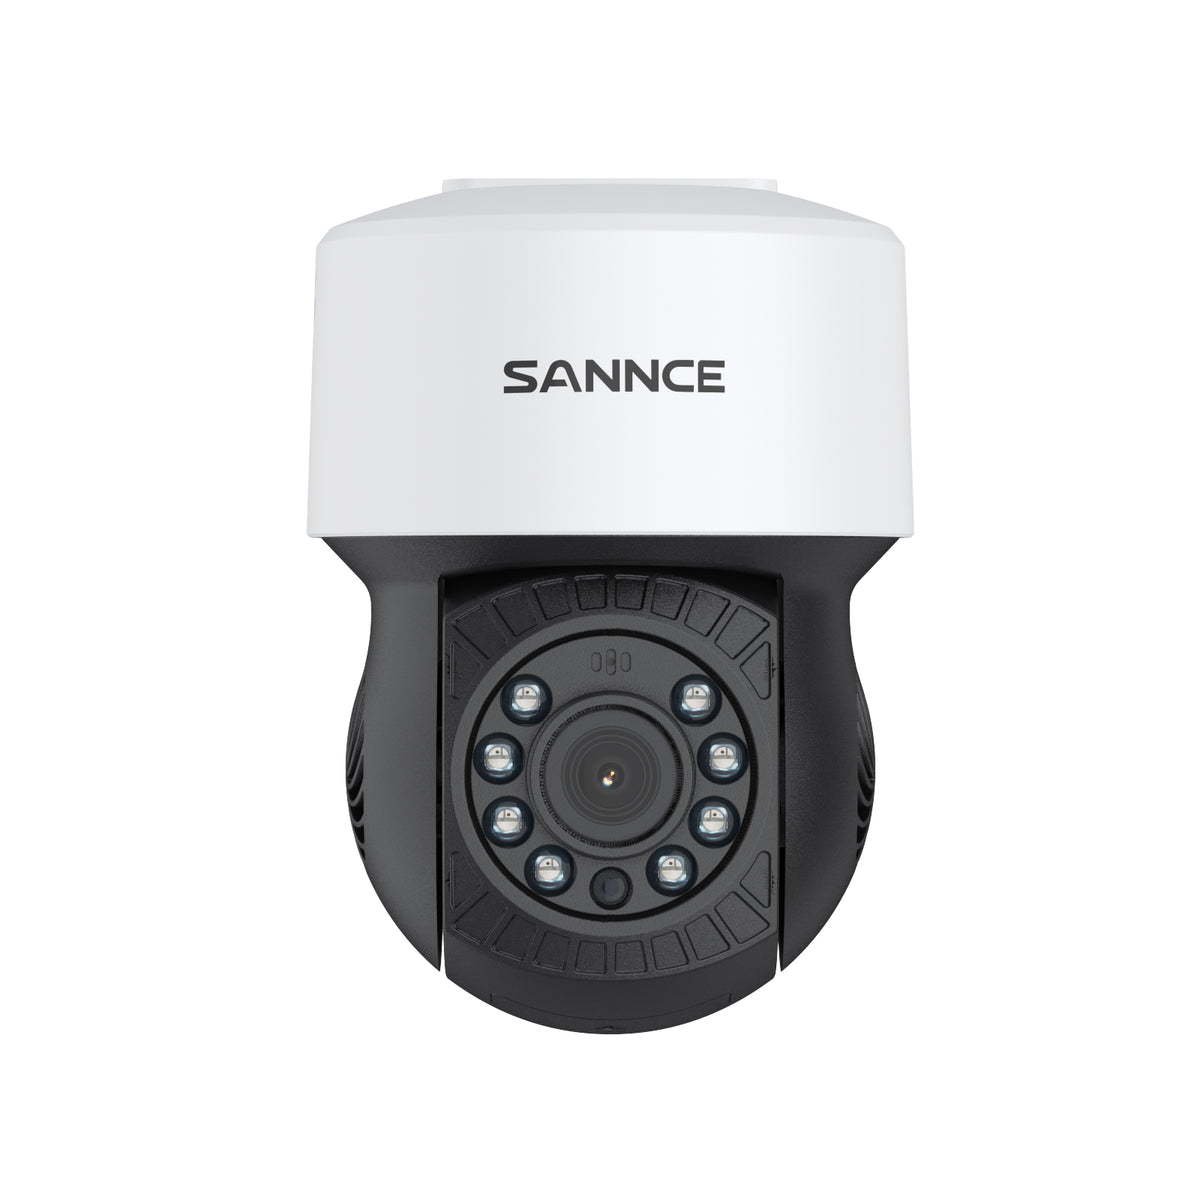 Caméra de sécurité panoramique et inclinable 1080p, panoramique 350°, inclinaison 90°, vision nocturne de 100 pieds, détection de mouvement, étanche